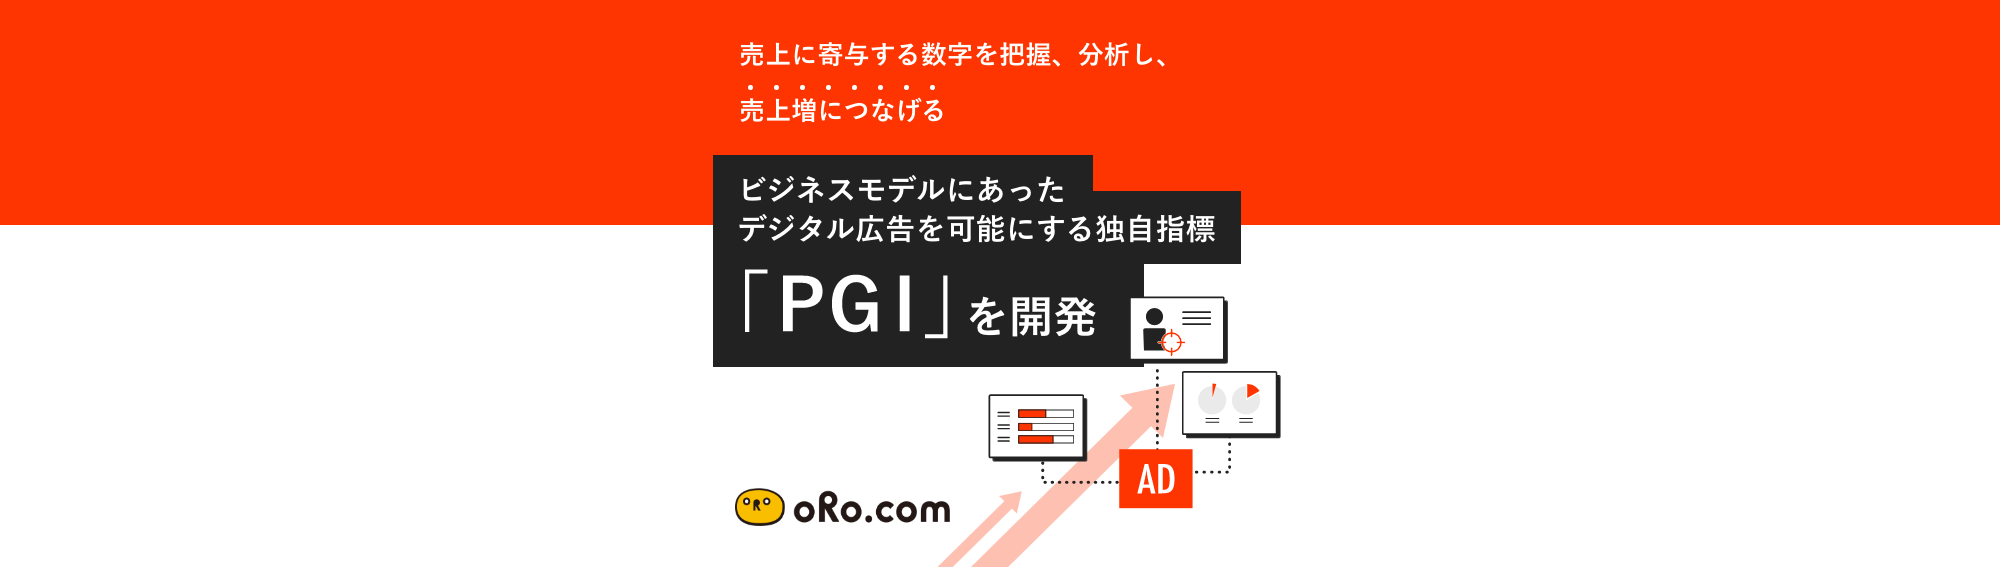 オロ、ビジネスモデルにあったデジタル広告を可能にする独自指標「PGI」を開発